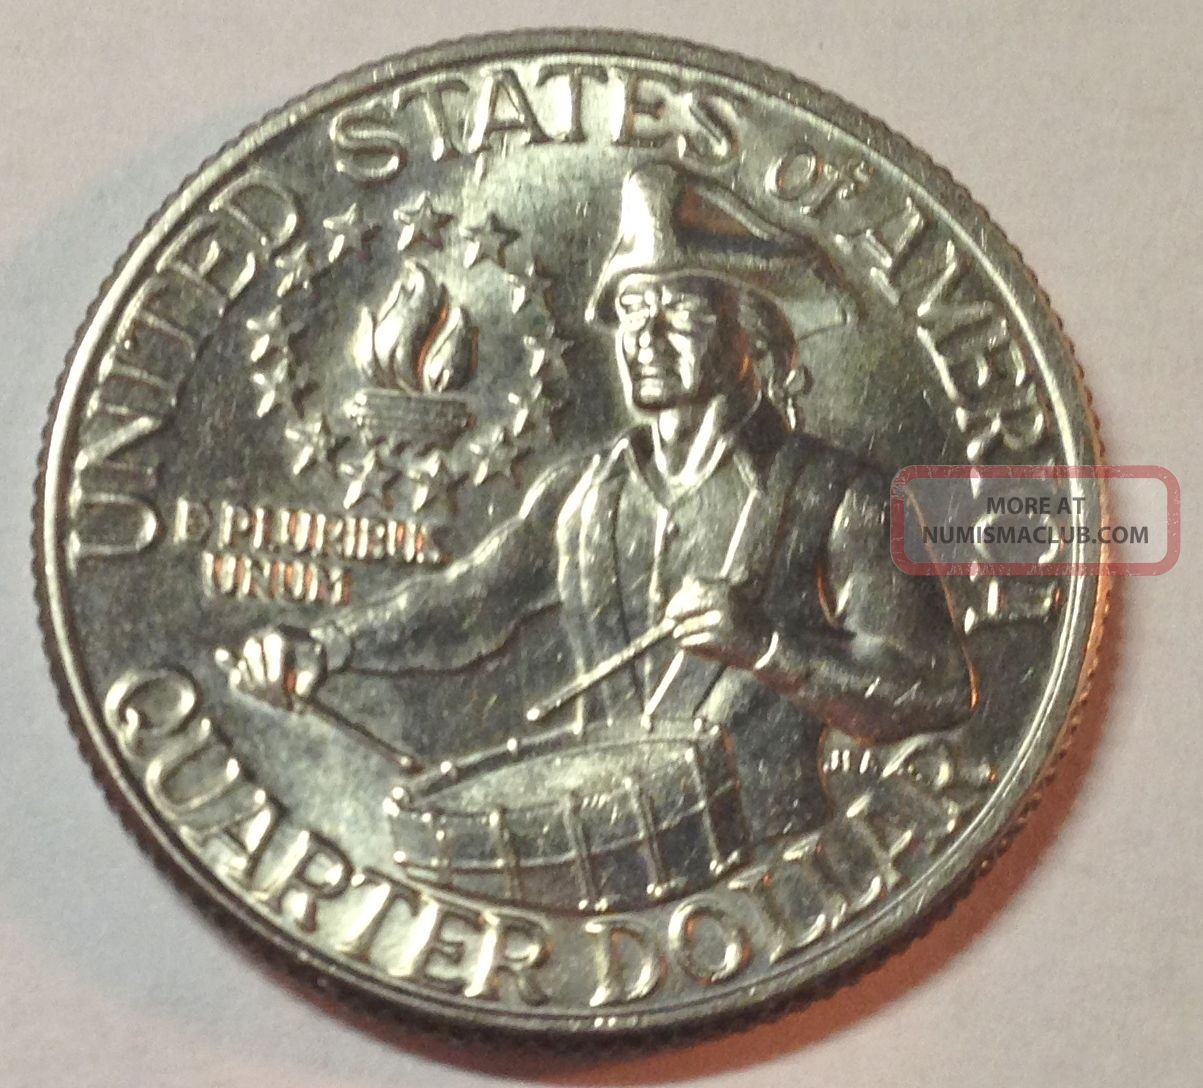 1776 - 1976d Bicentennial Quarter. Coin